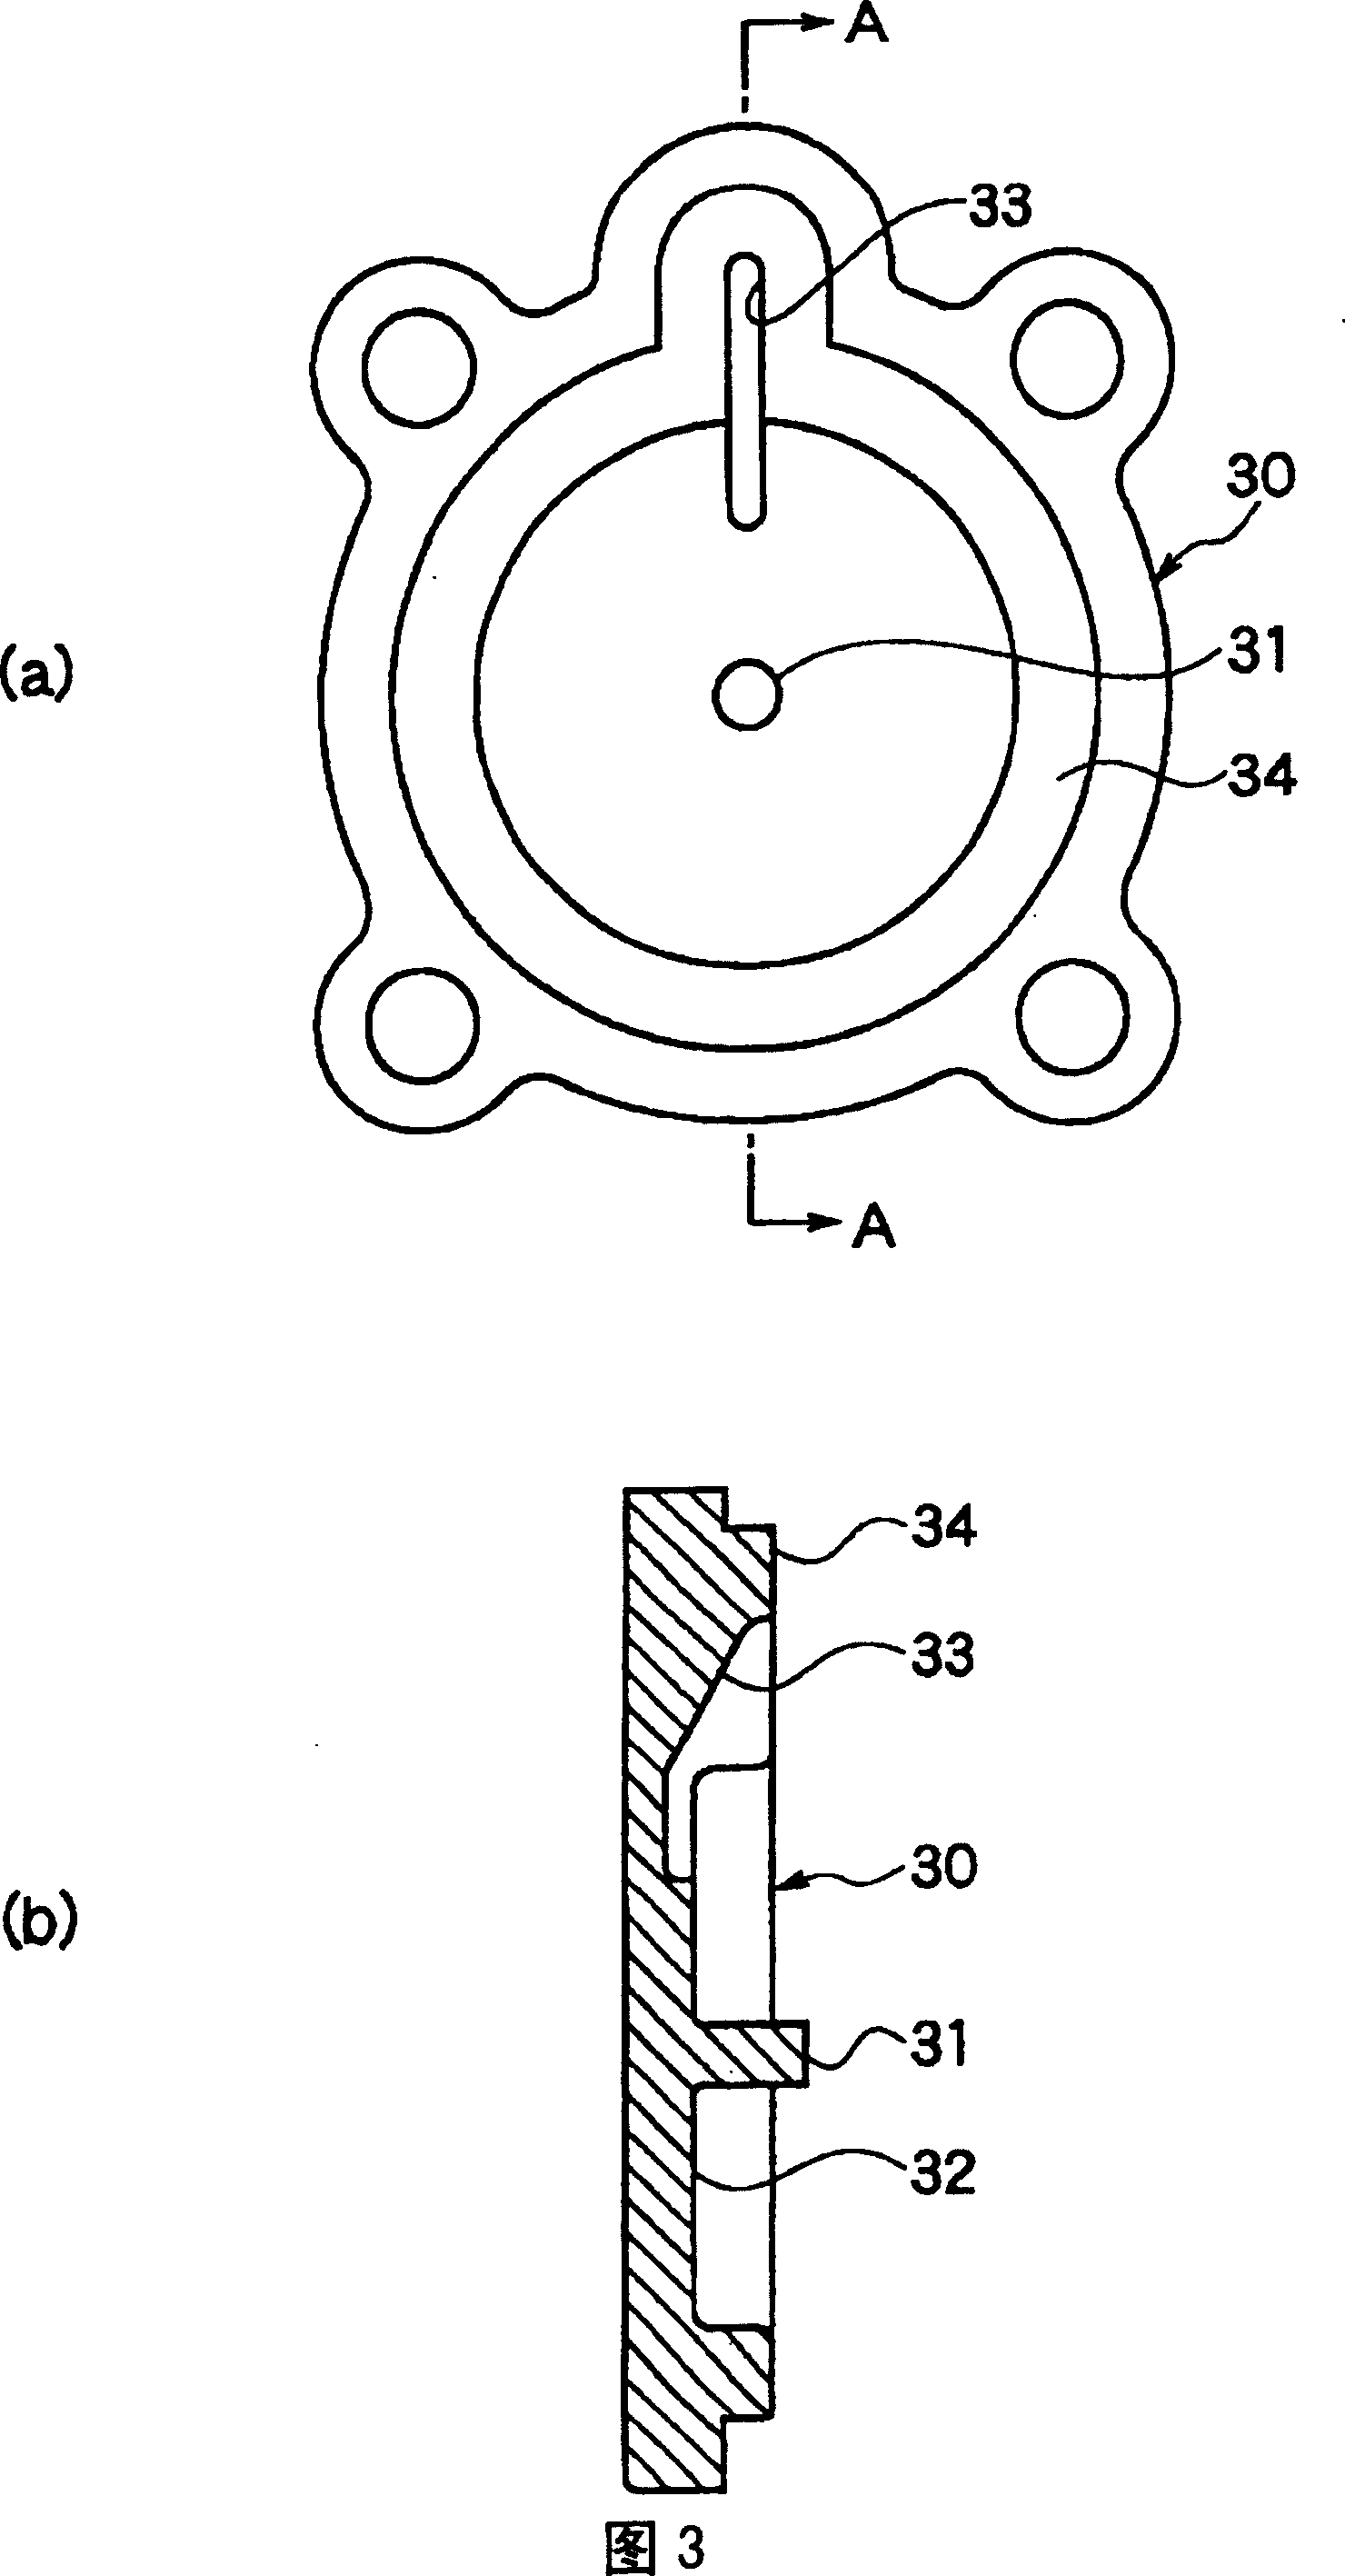 Fluid valve device